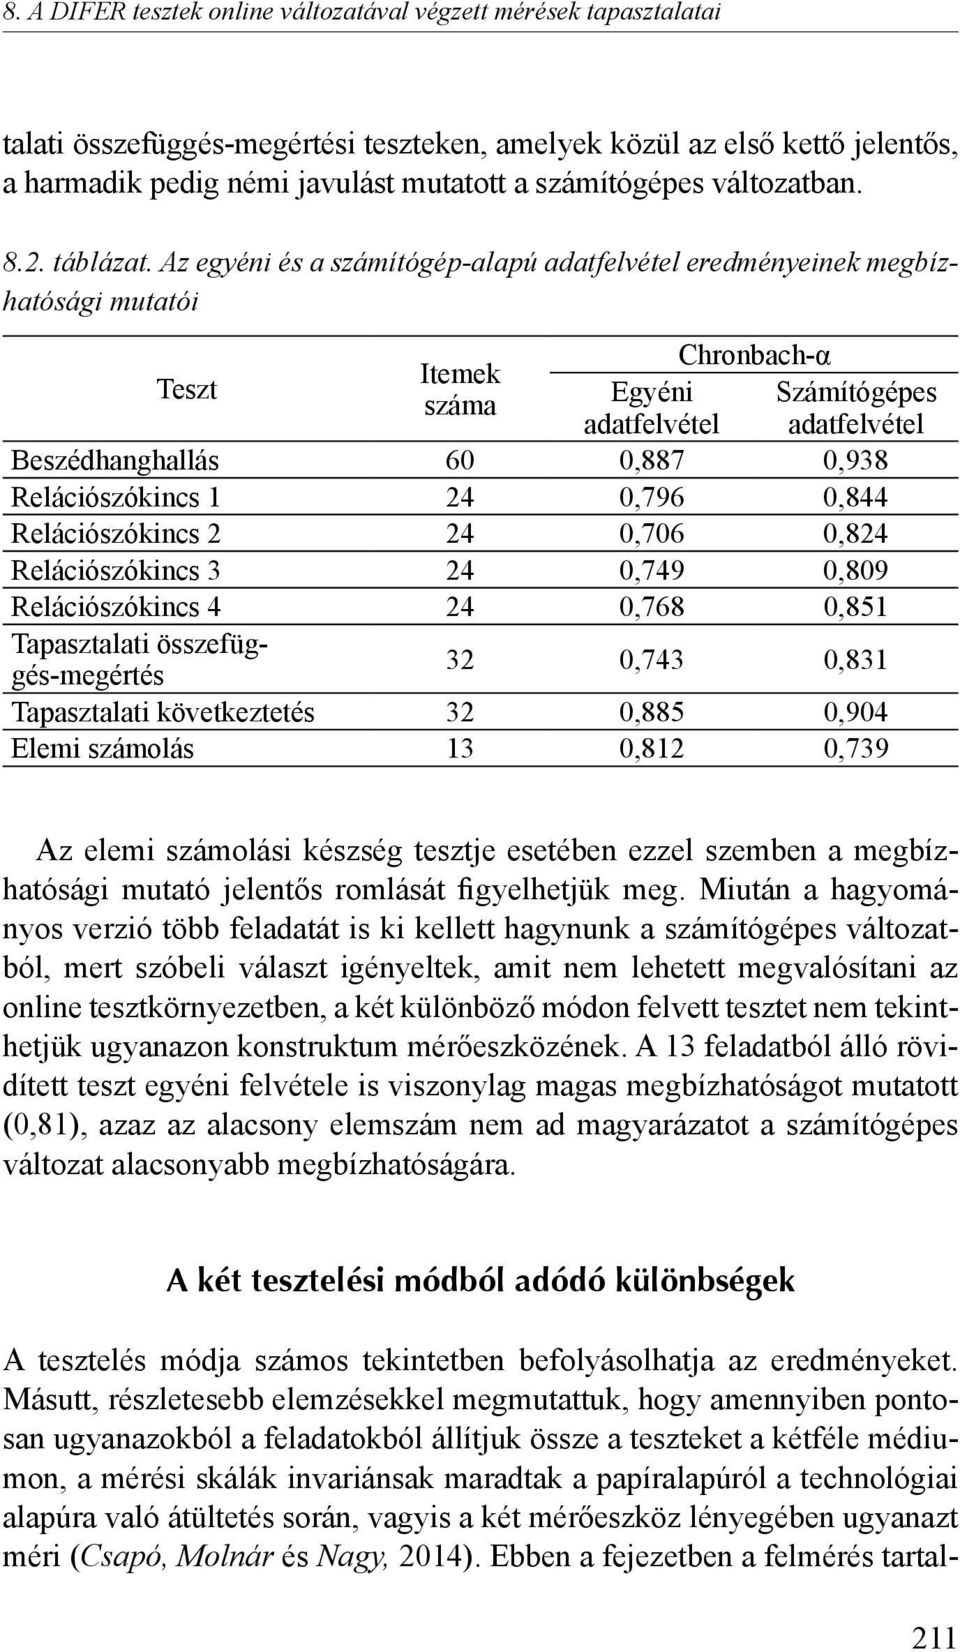 Az egyéni és a számítógép-alapú adatfelvétel eredményeinek megbízhatósági mutatói Teszt Chronbach-α Itemek száma Egyéni Számítógépes adatfelvétel adatfelvétel Beszédhanghallás 60 0,887 0,938